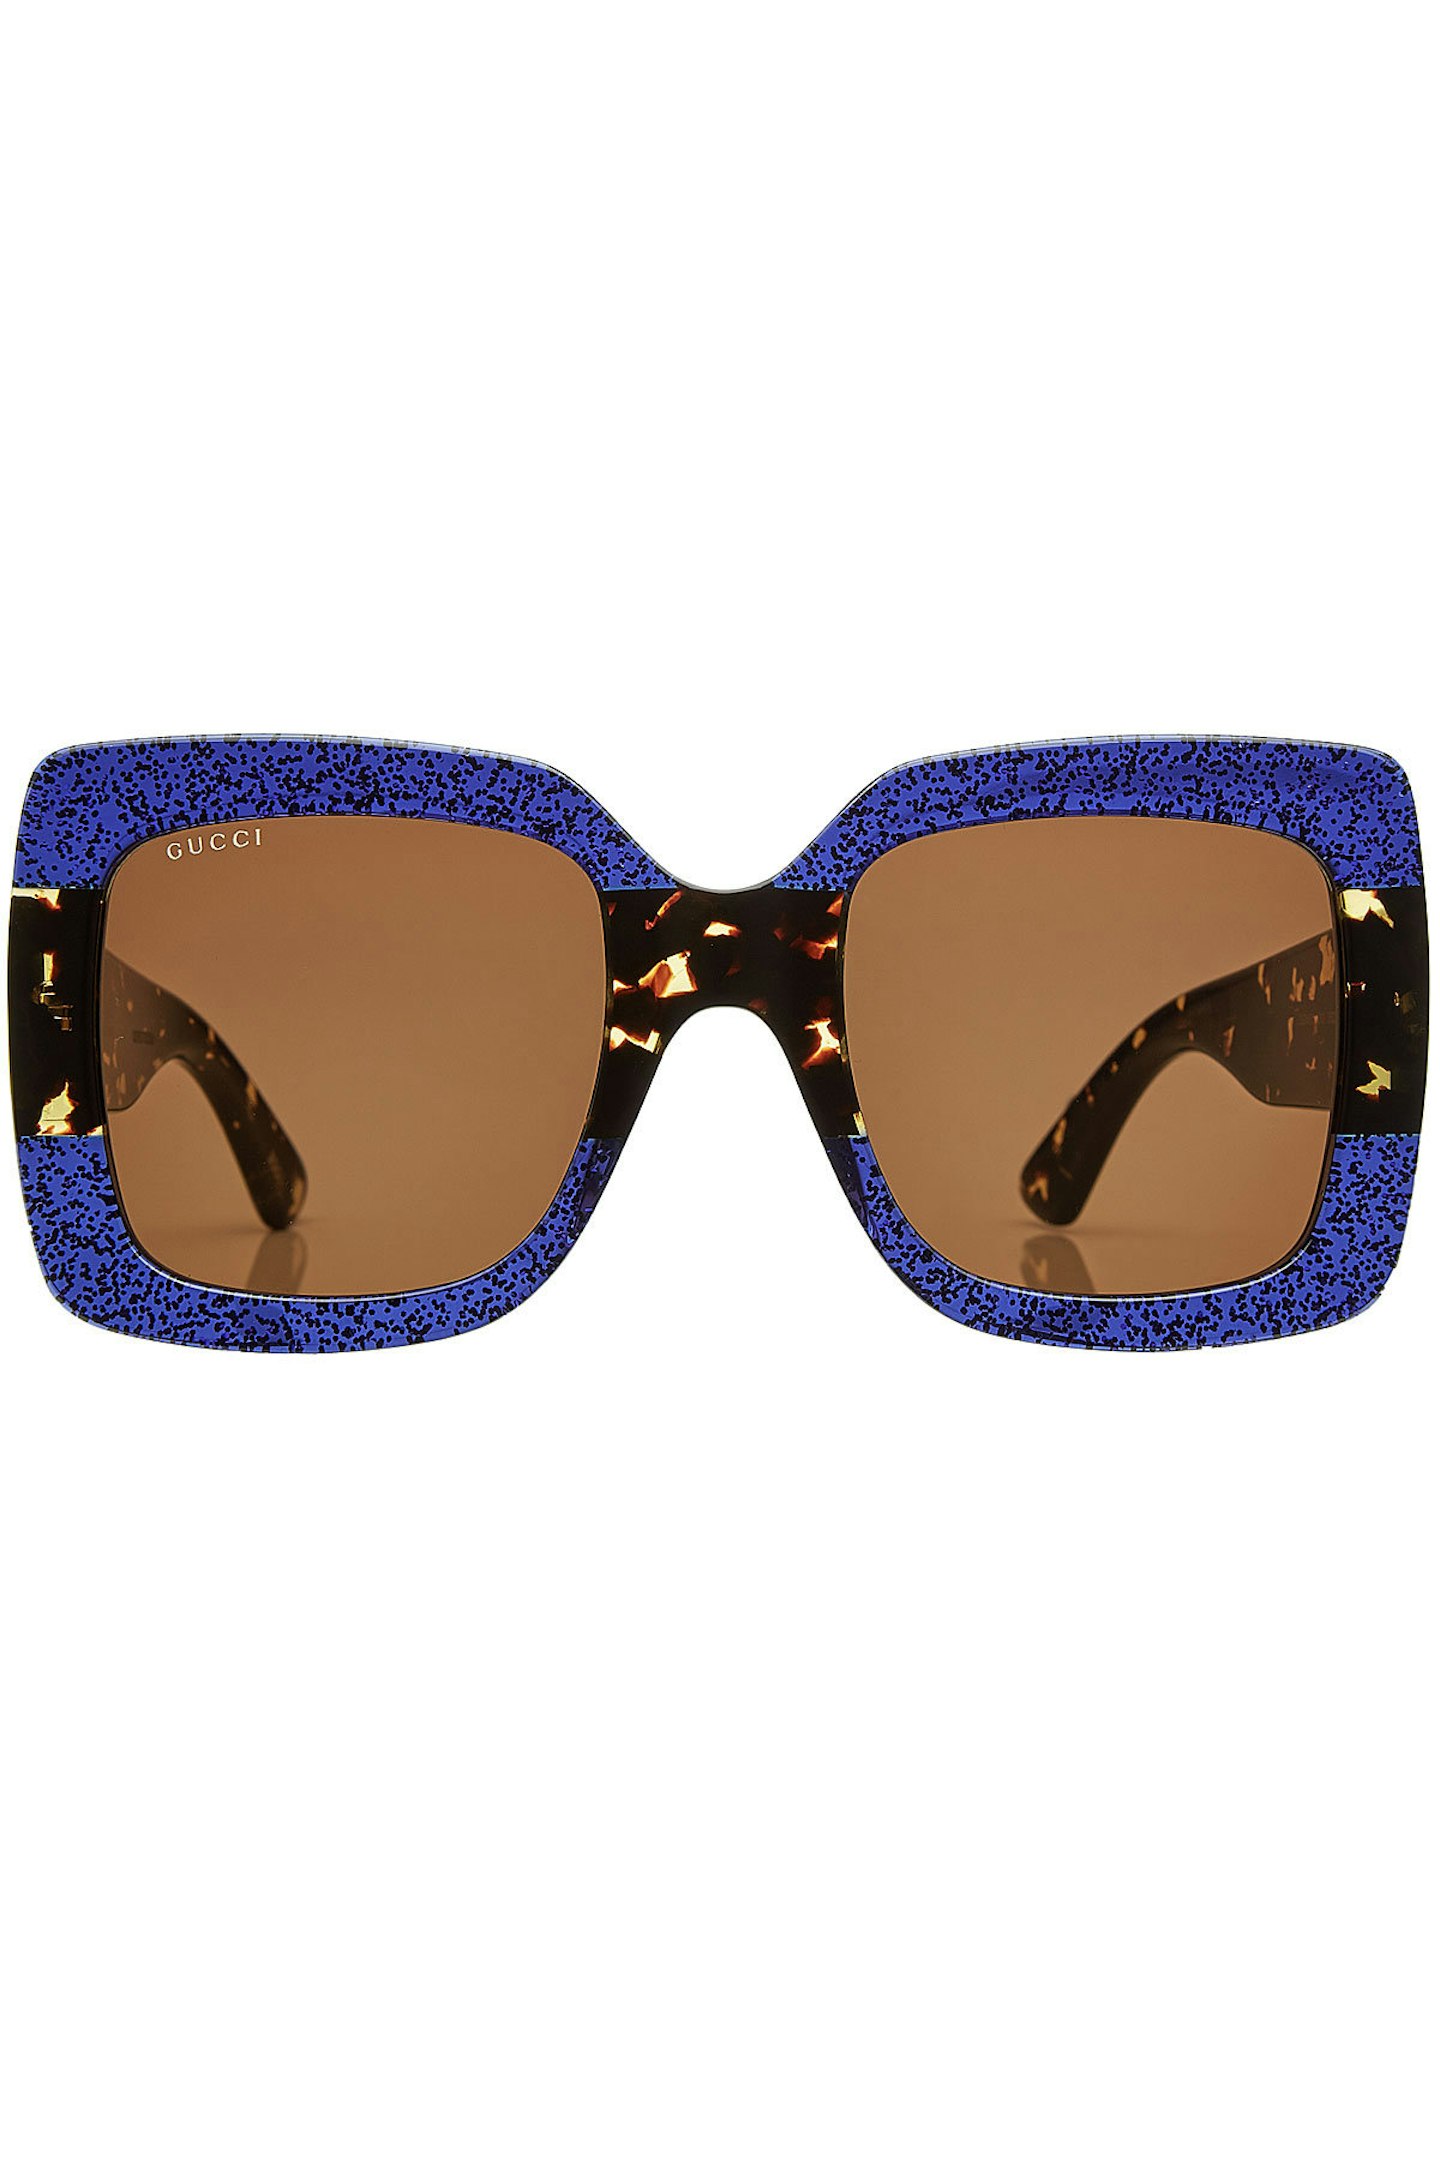 gucci-square-sunglasses